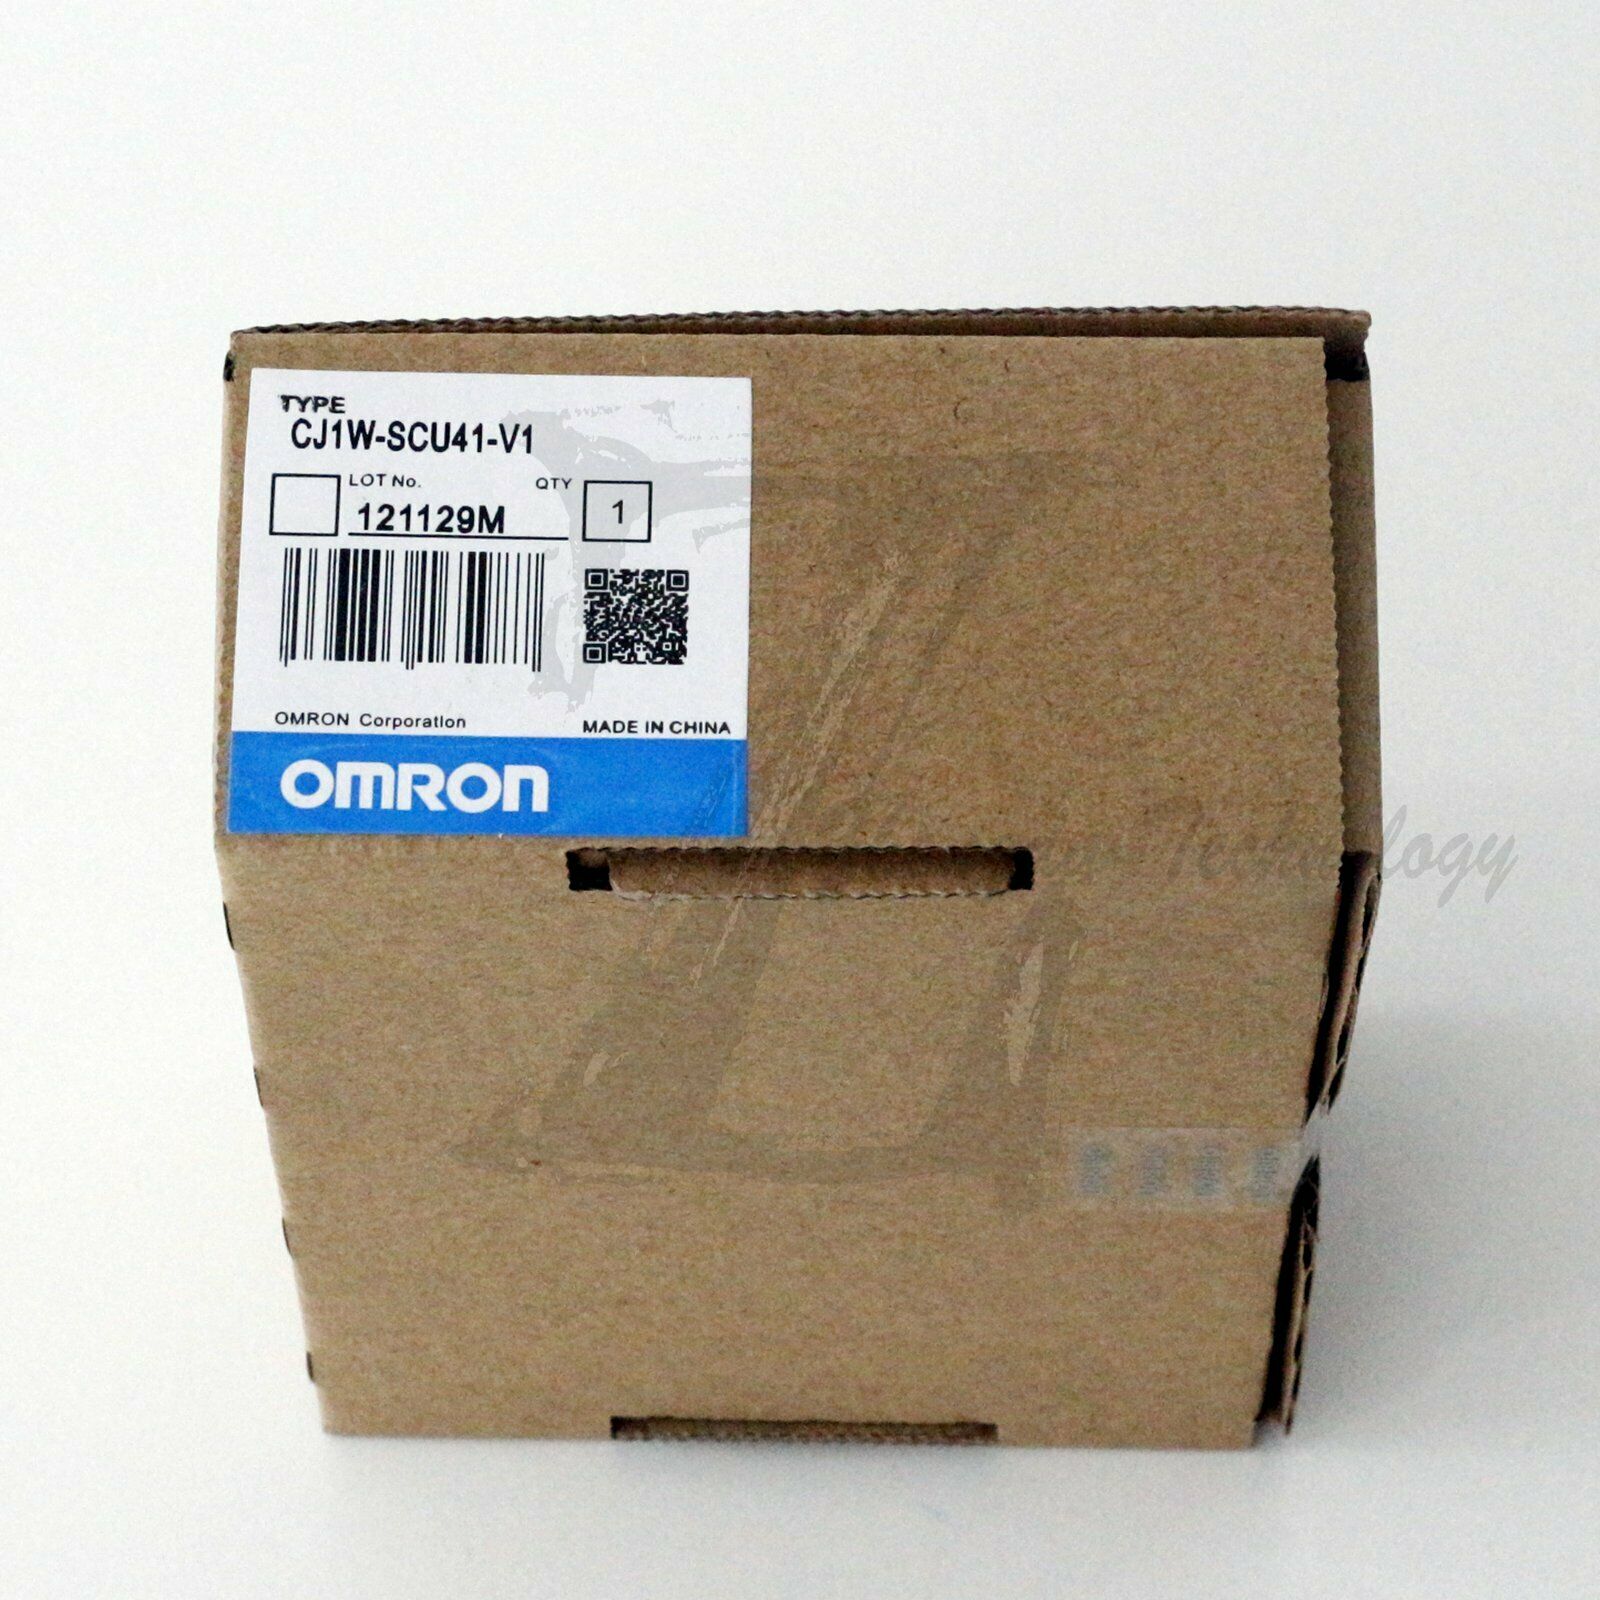 1PCS New In Box Omron PLC Module CJ1W-SCU41-V1 CJ1WSCU41V1 One year warranty KOEED 201-500, 80%, import_2020_10_10_031751, OMRON, Other